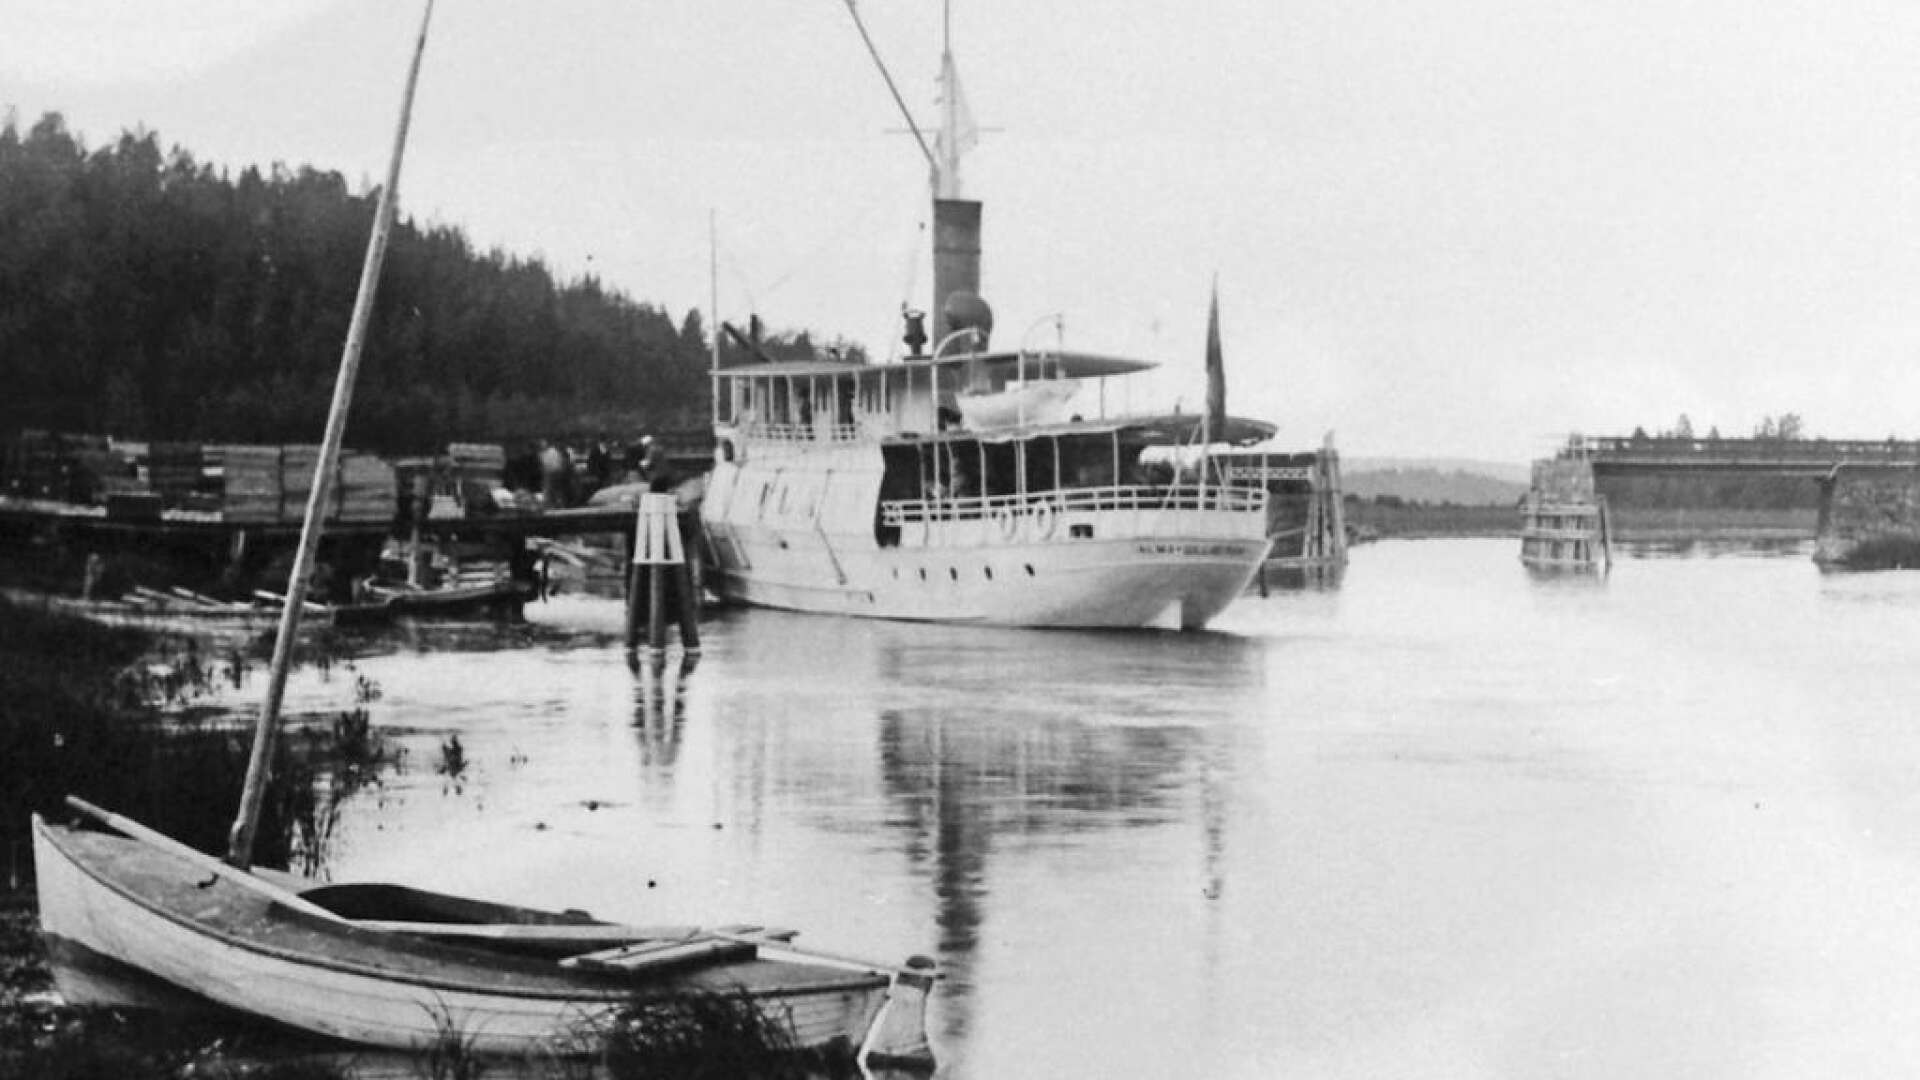 Alma Gillberga kunde man läsa på aktern av fartyget. Alma tog upp konkurrensen med Nordstjernan och Svea, men hamnade med tiden i samma ångbåtsbolag.